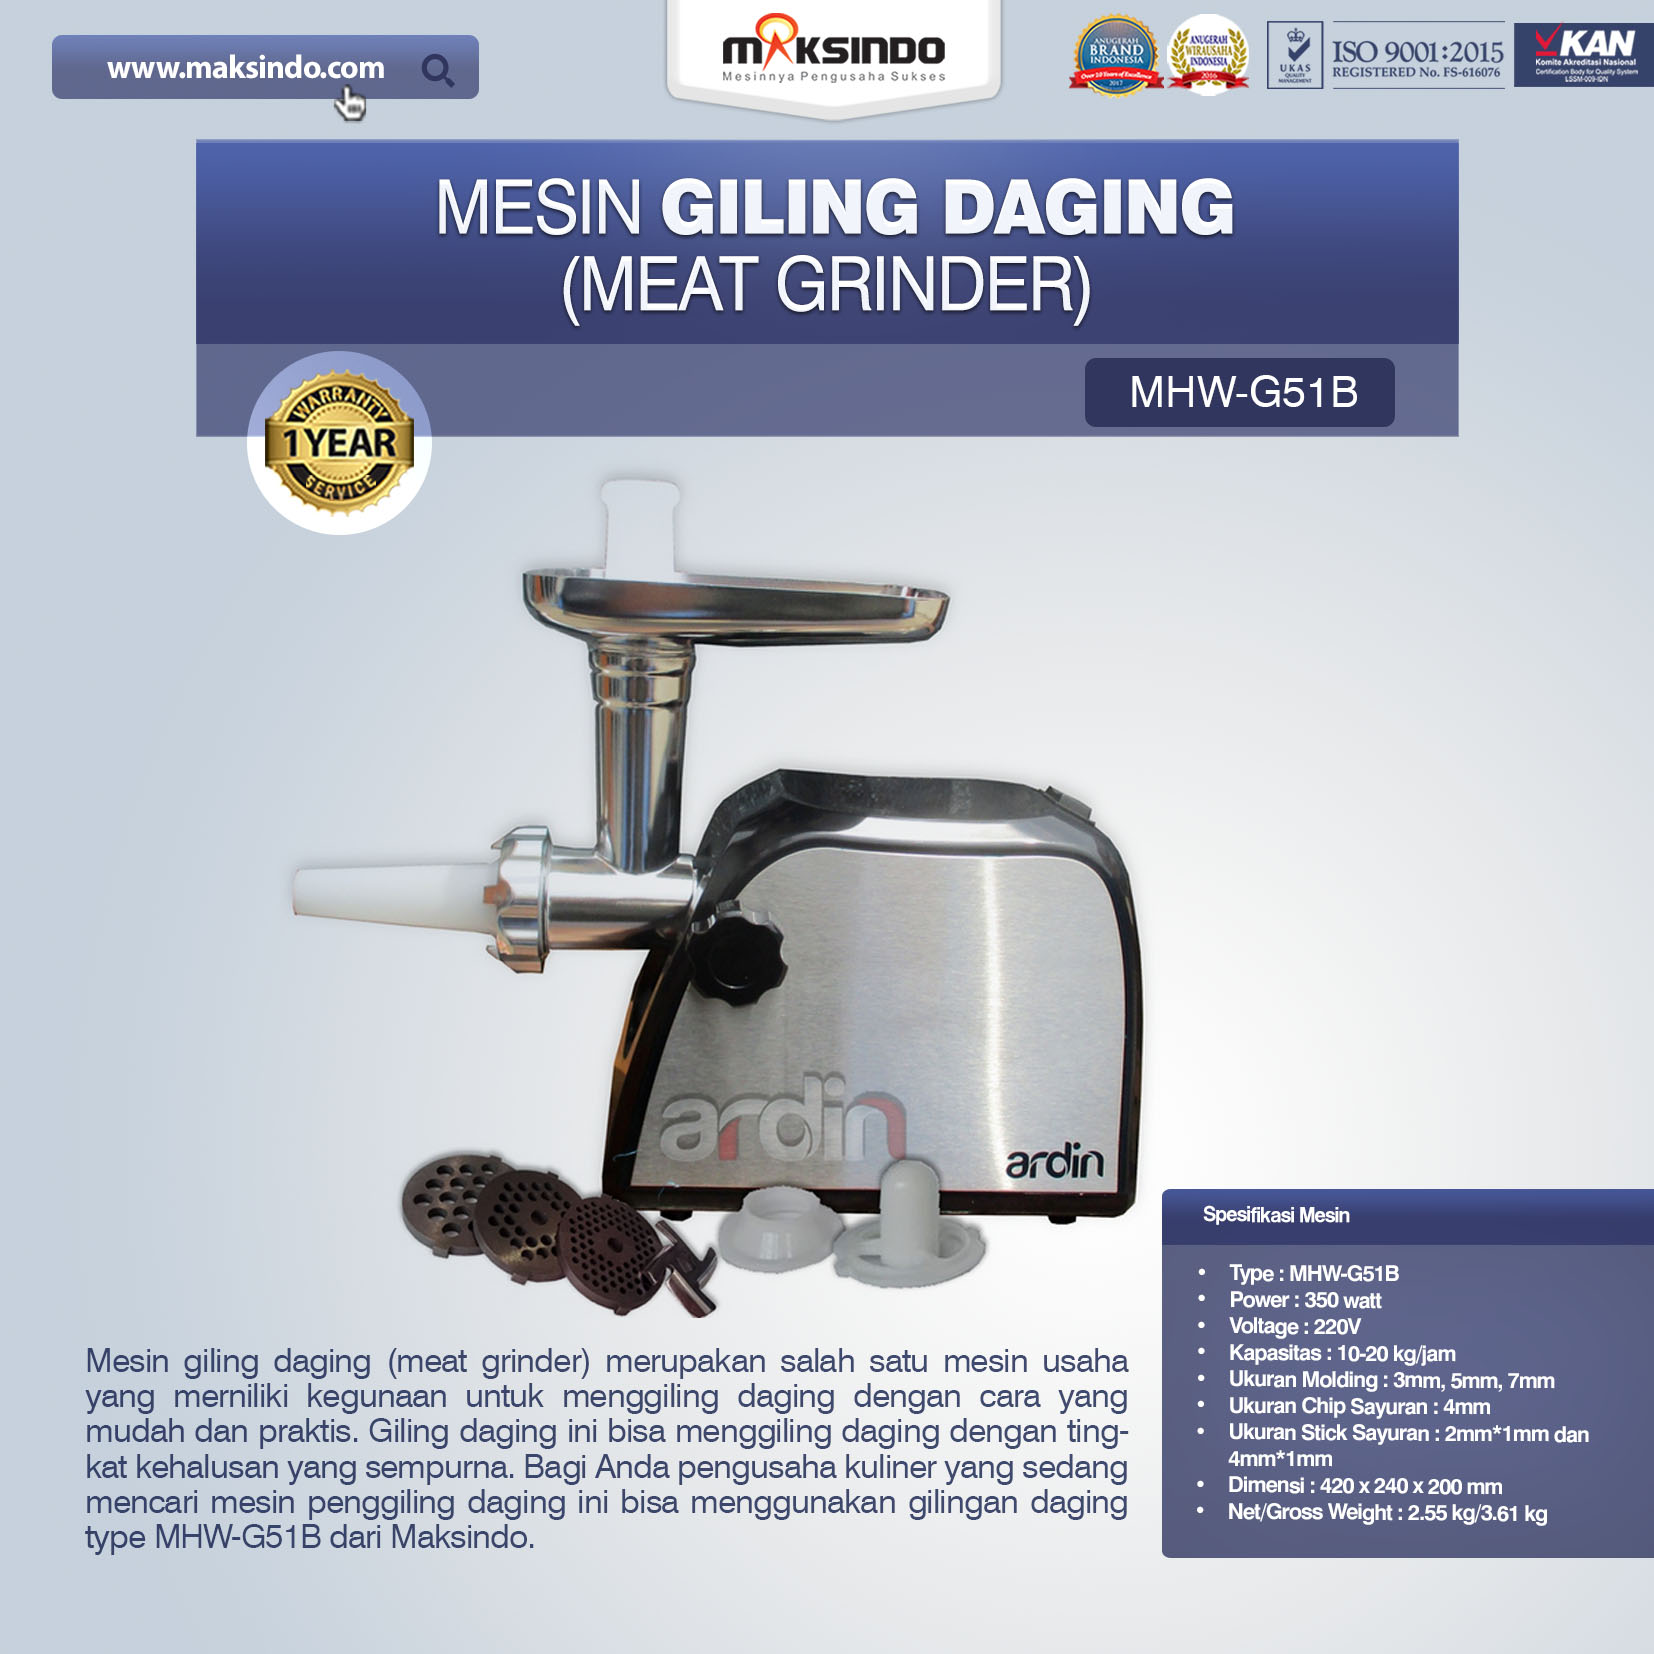 Jual Mesin Giling Daging (Meat Grinder) MHW-G51B di Tangerang